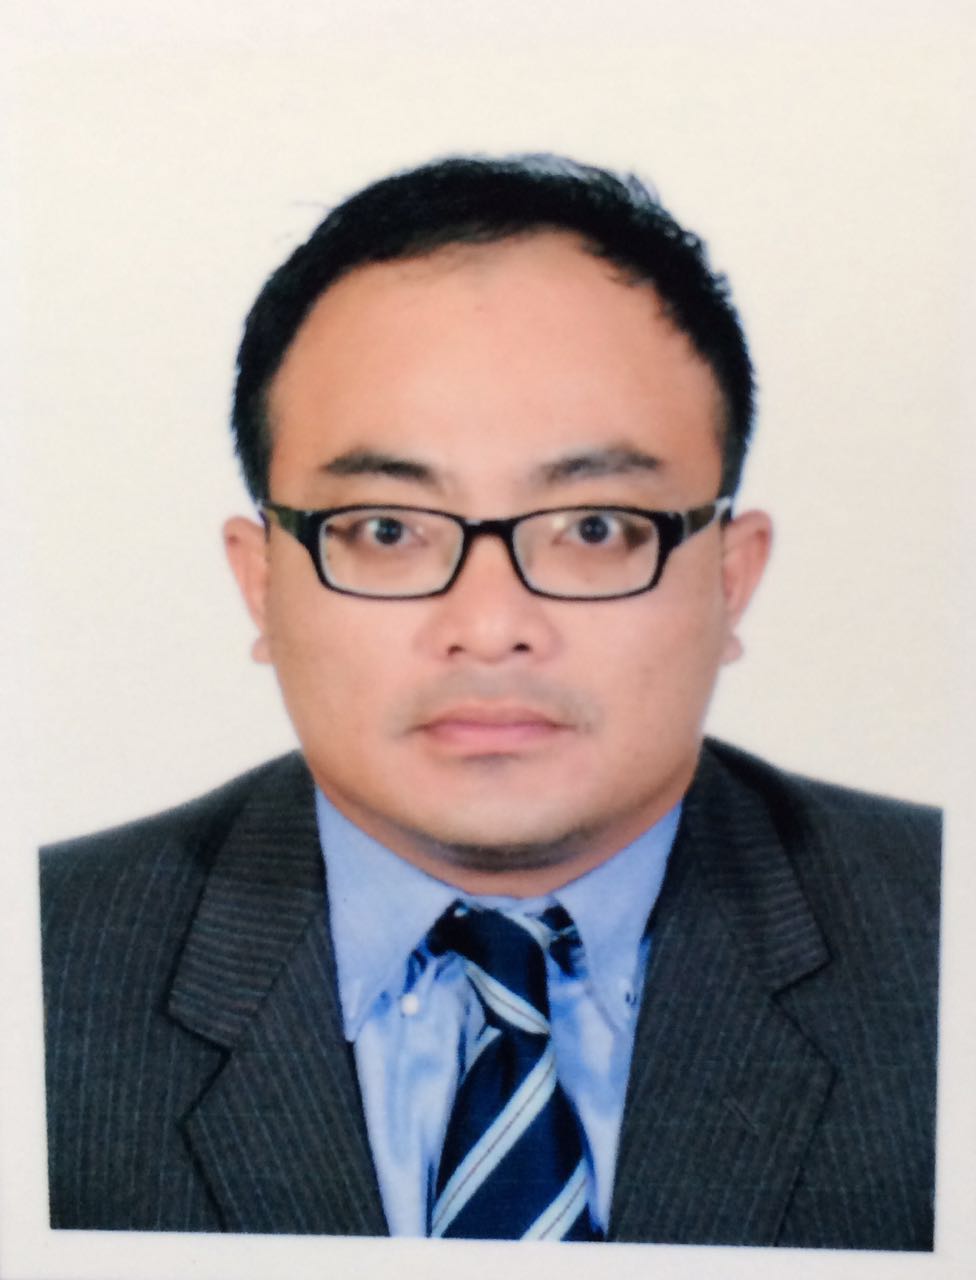 Dr. Asnor Muizan bin Dato Ishak